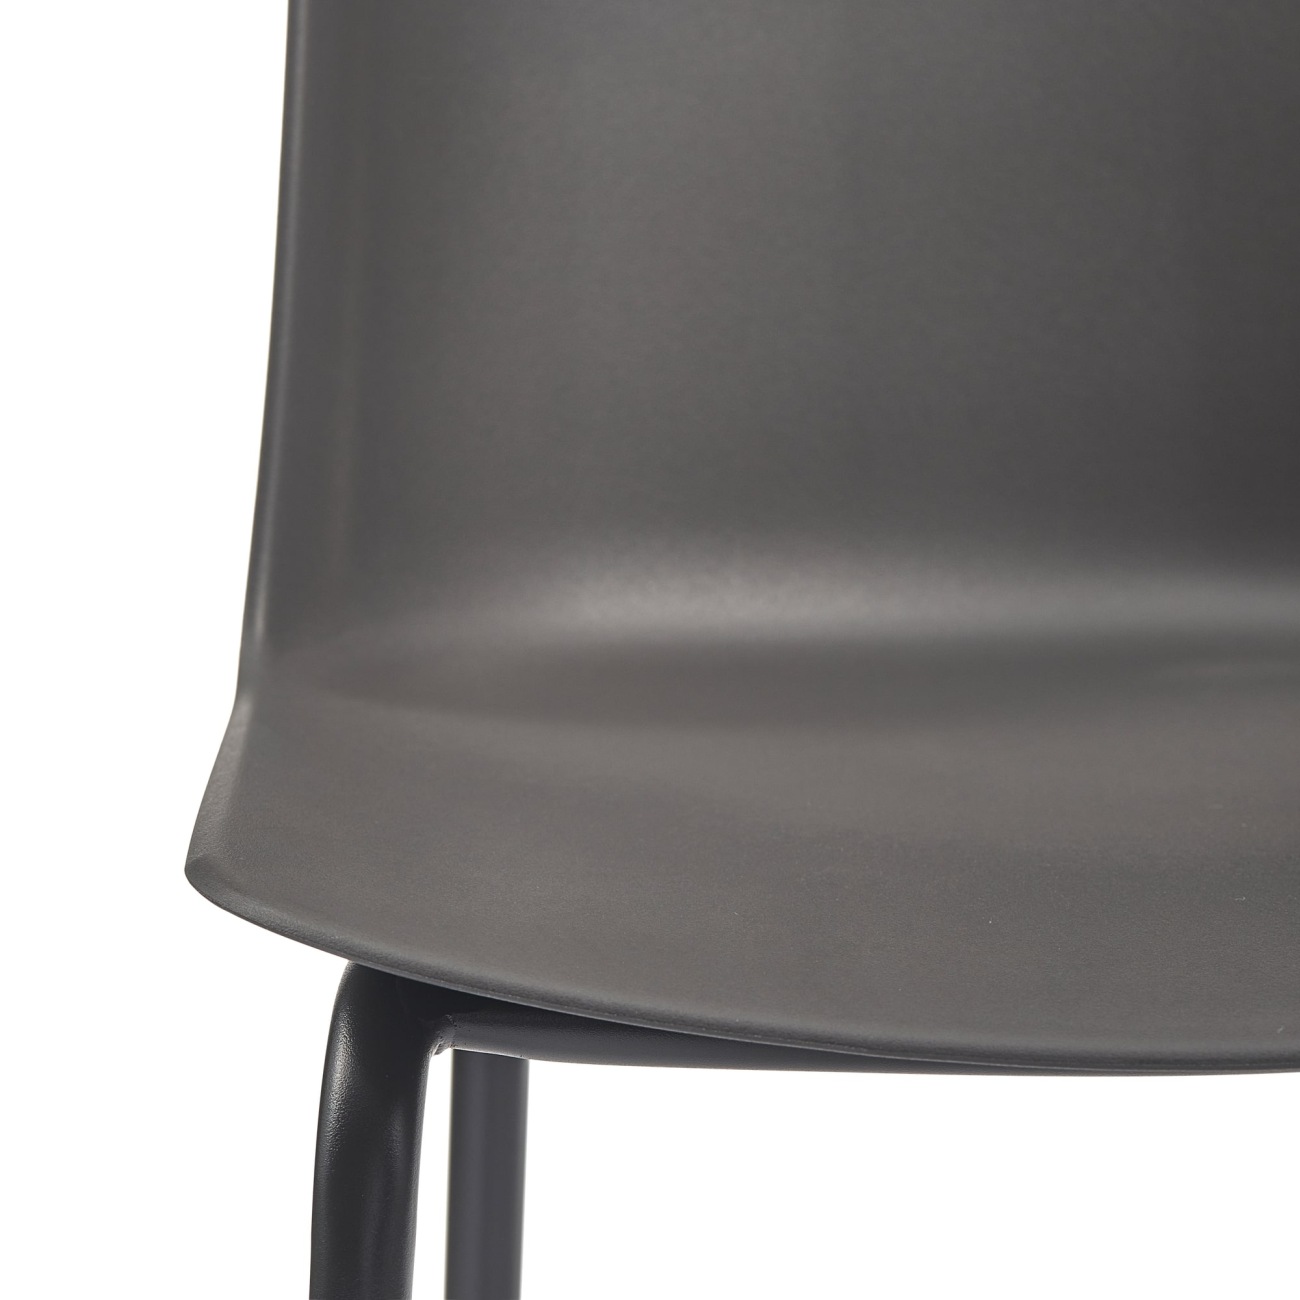 Der Gartenbarstuhl Guy überzeugt mit seinem modernen Design. Gefertigt wurde er aus Kunststoff, welcher einen grauen Farbton besitzt. Das Gestell ist aus Metall und hat eine schwarze Farbe. Der Barstuhl besitzt eine Sitzhöhe von 74 cm.